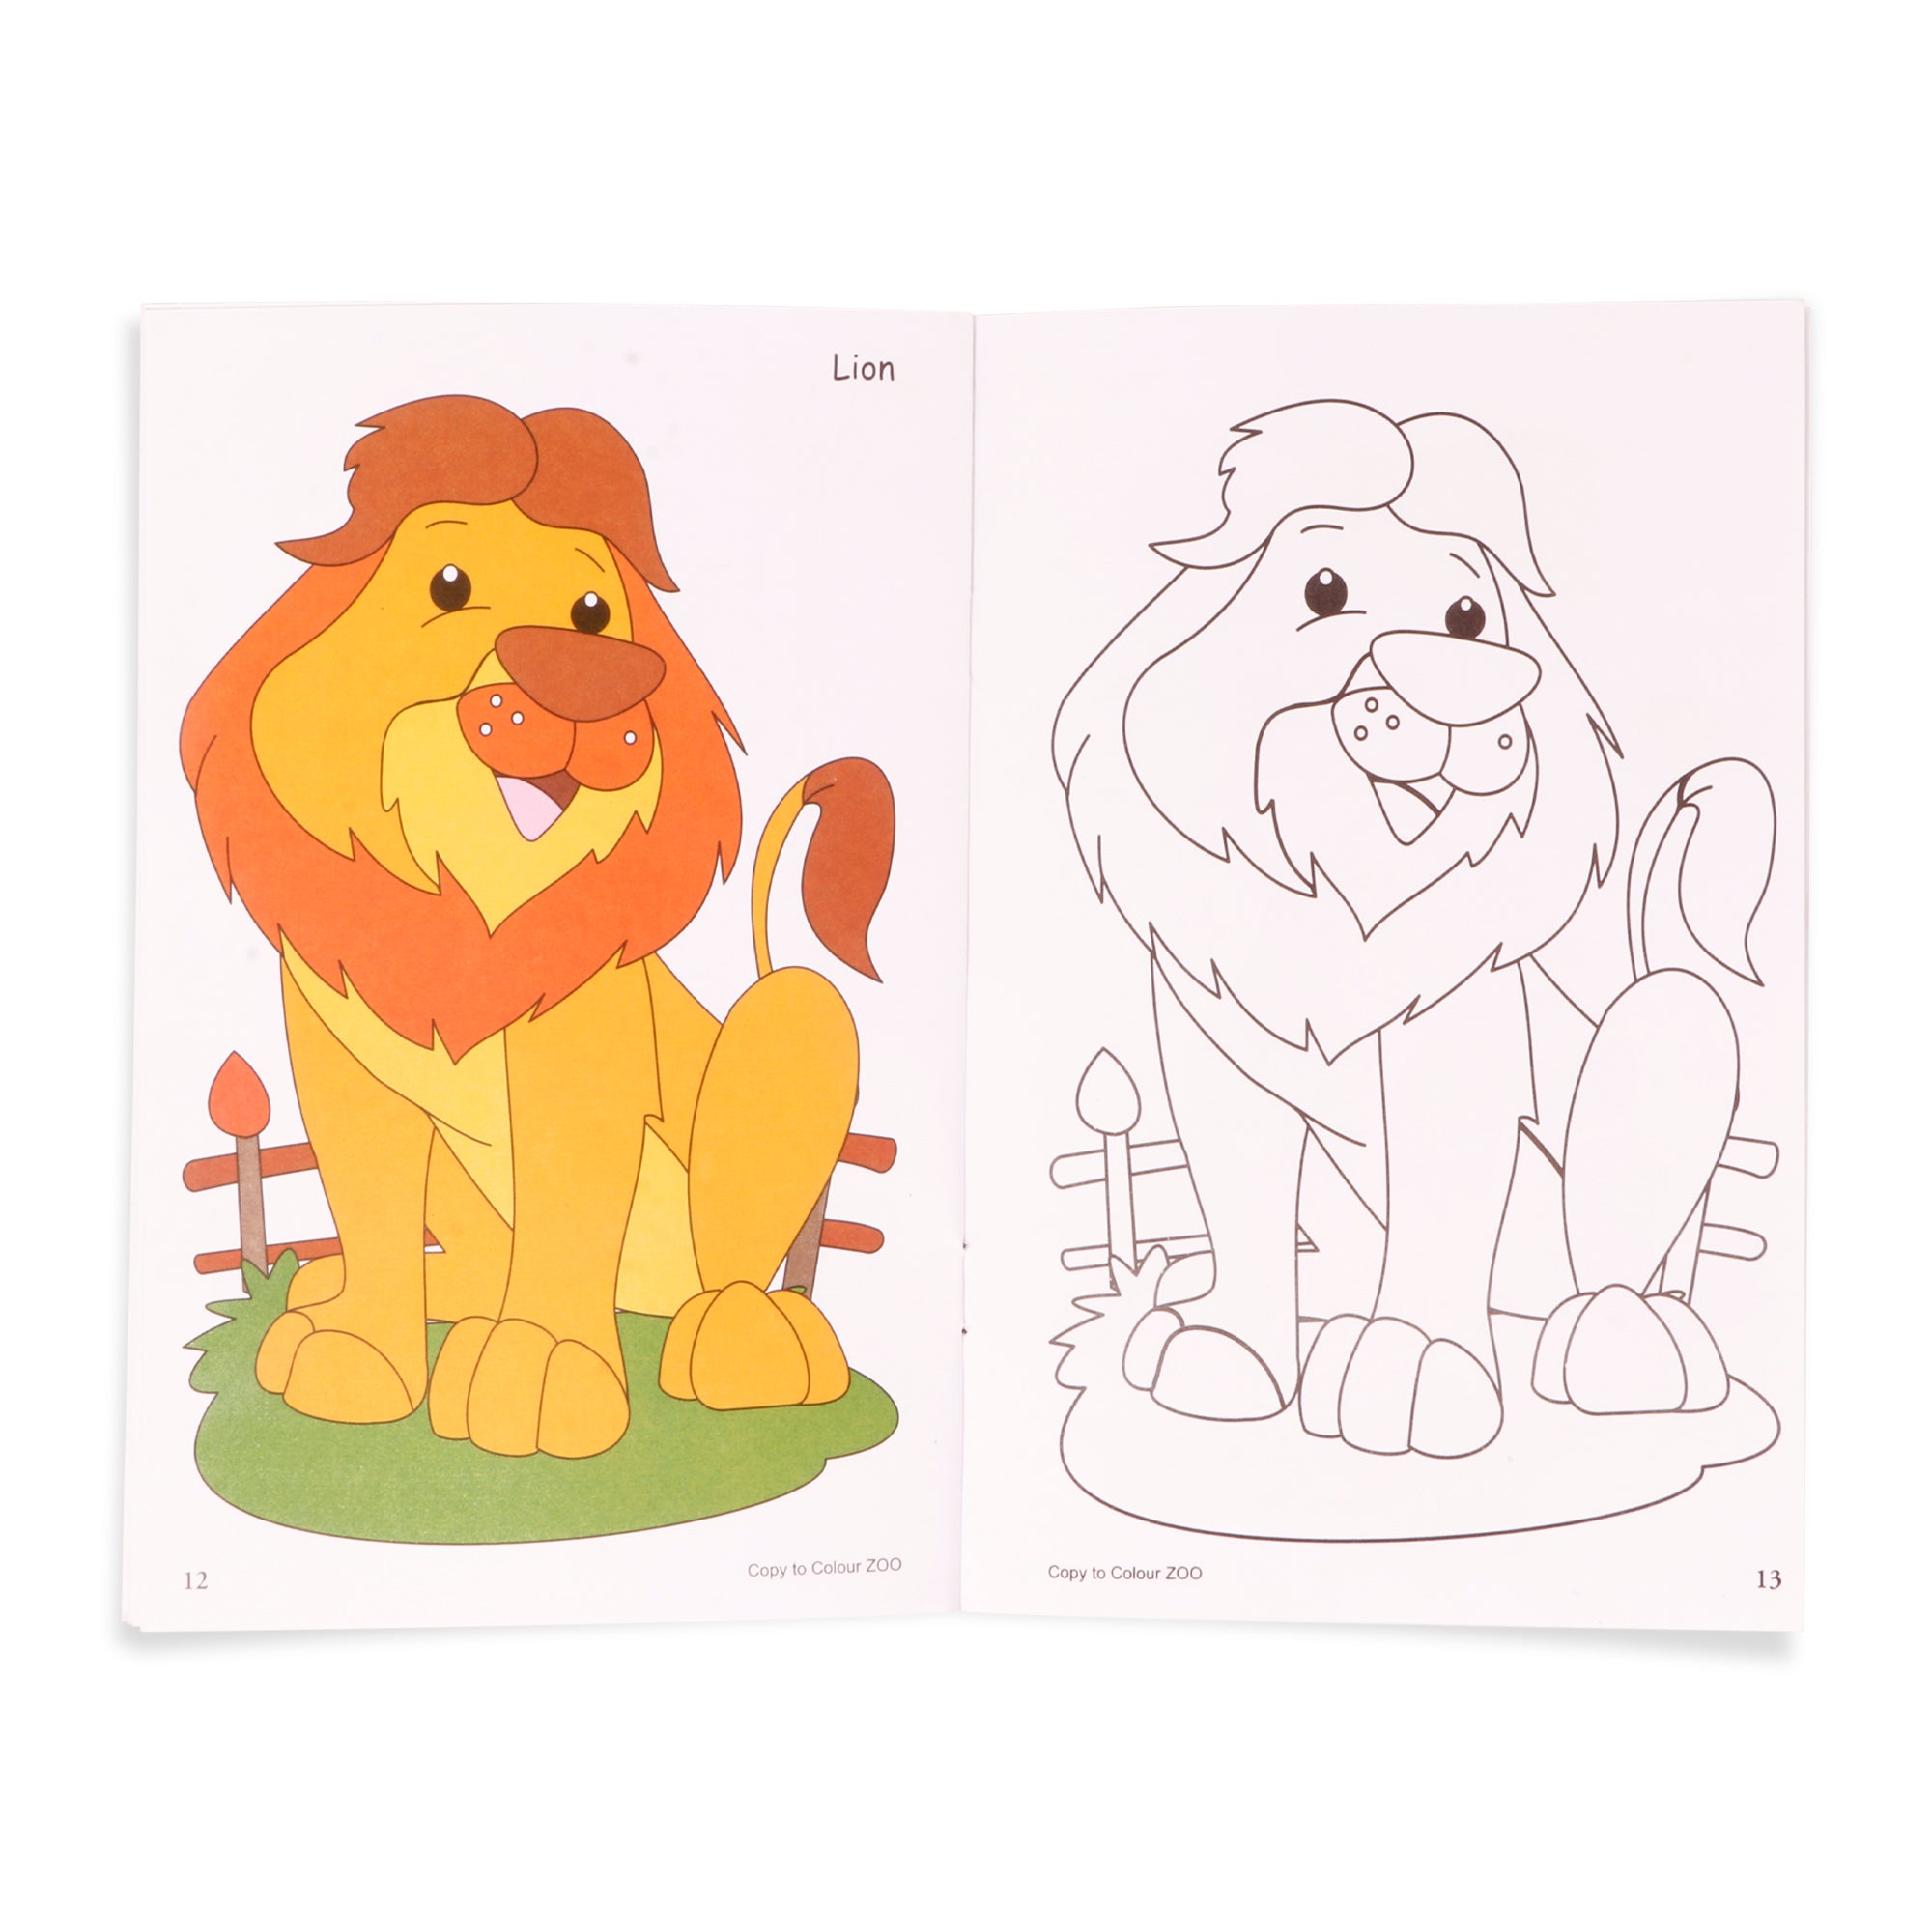 Copy To Colour Zoo 1Book